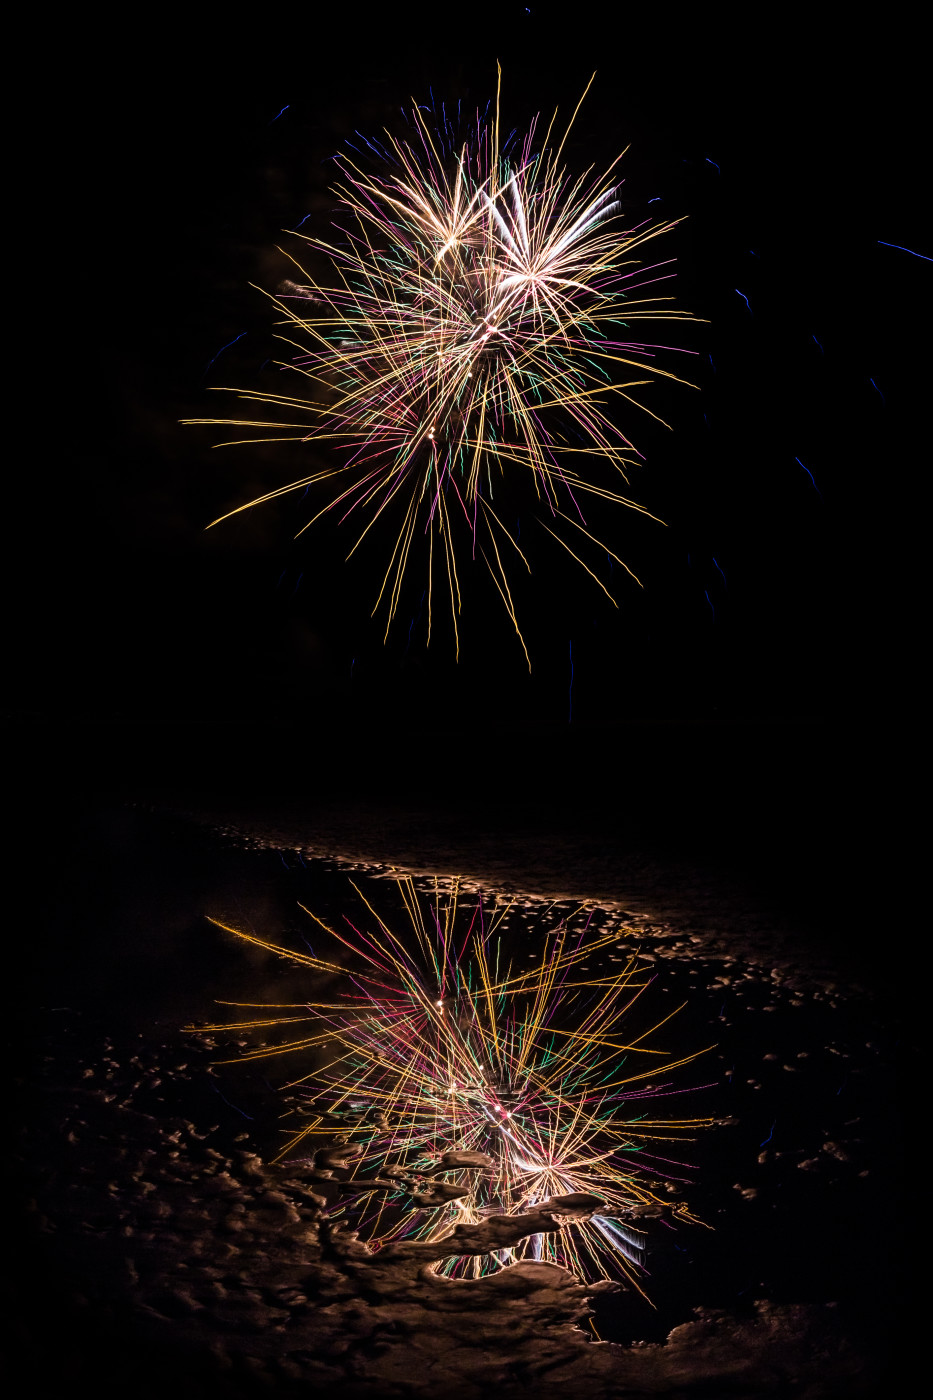 Reflet de fin d'été. Photo prise à Fort-Mahon-Plage. Très beau feu d'artifice avec de joli reflet dans l'eau.